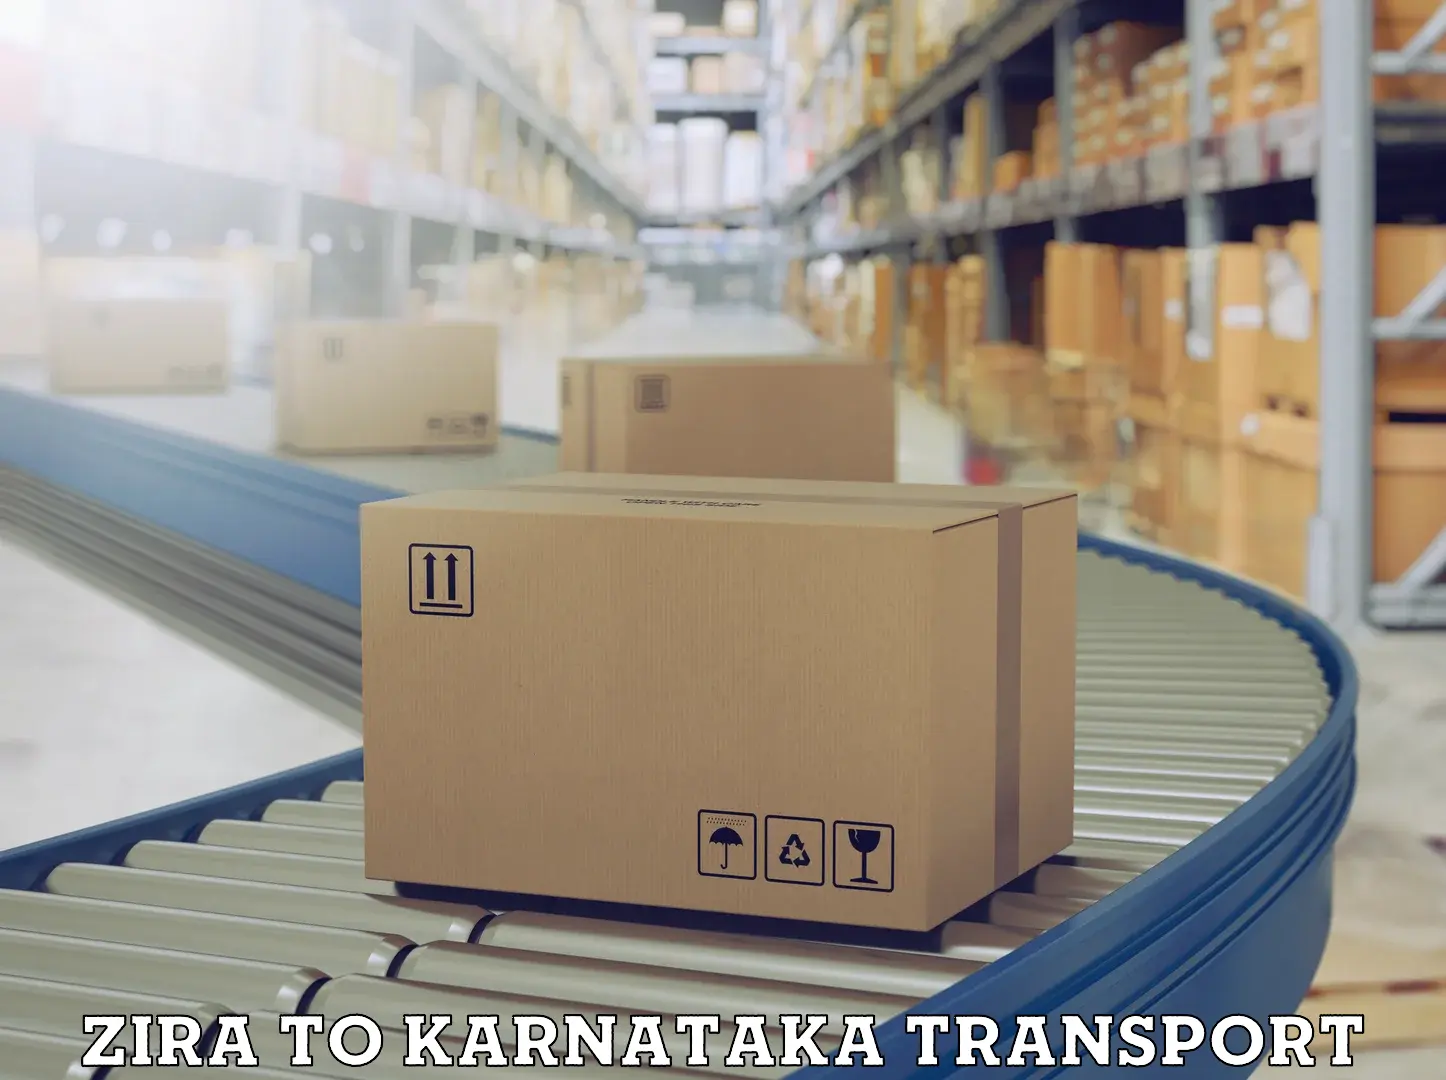 Container transport service Zira to Bengaluru